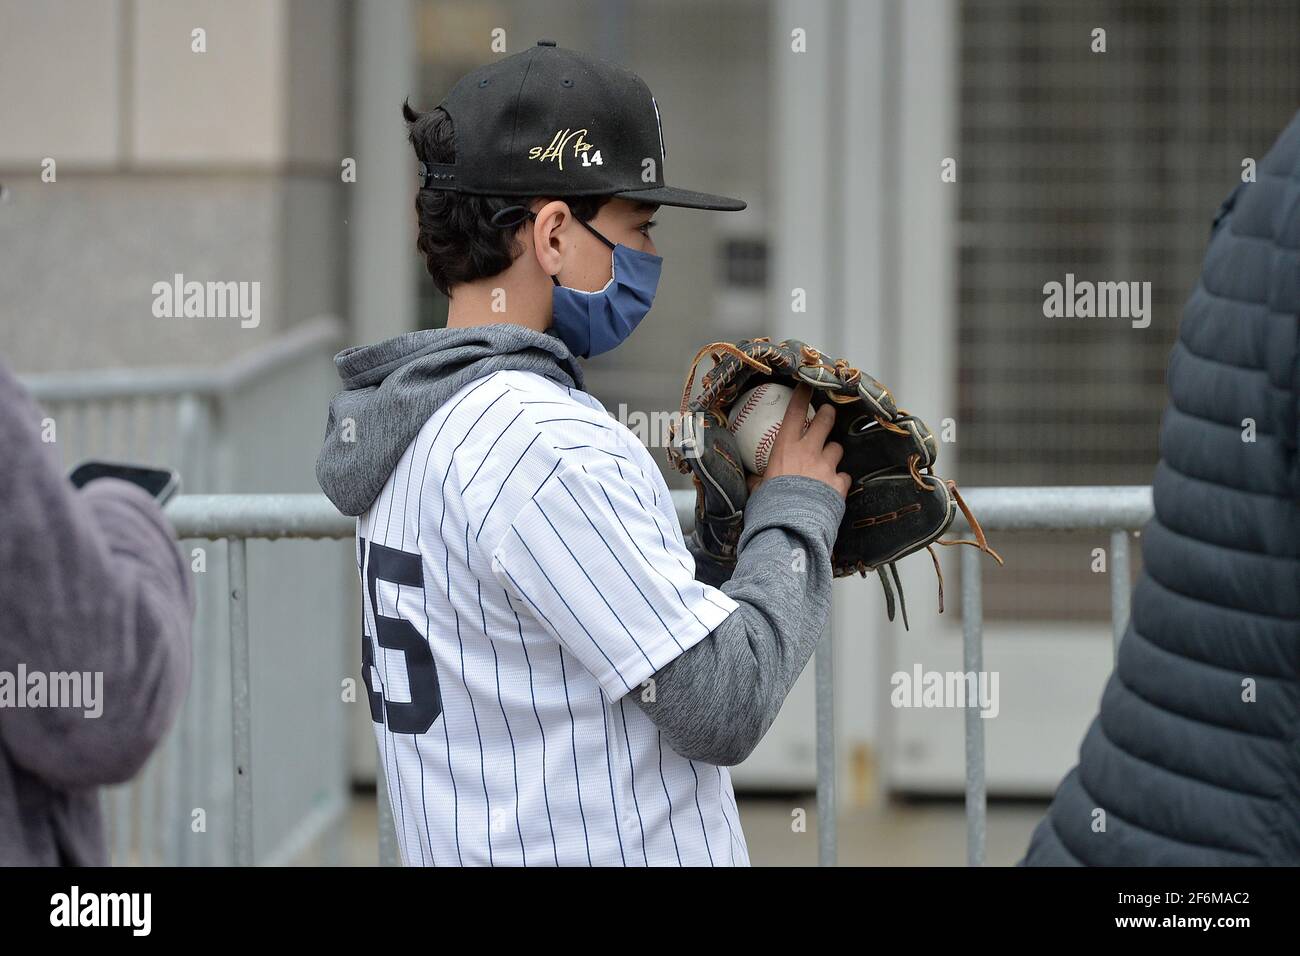 Un jeune fan portant un maillot à fines rayures et tenant un gant de  baseball et une balle attend en ligne pour assister au match de baseball  des New York Yankees contre